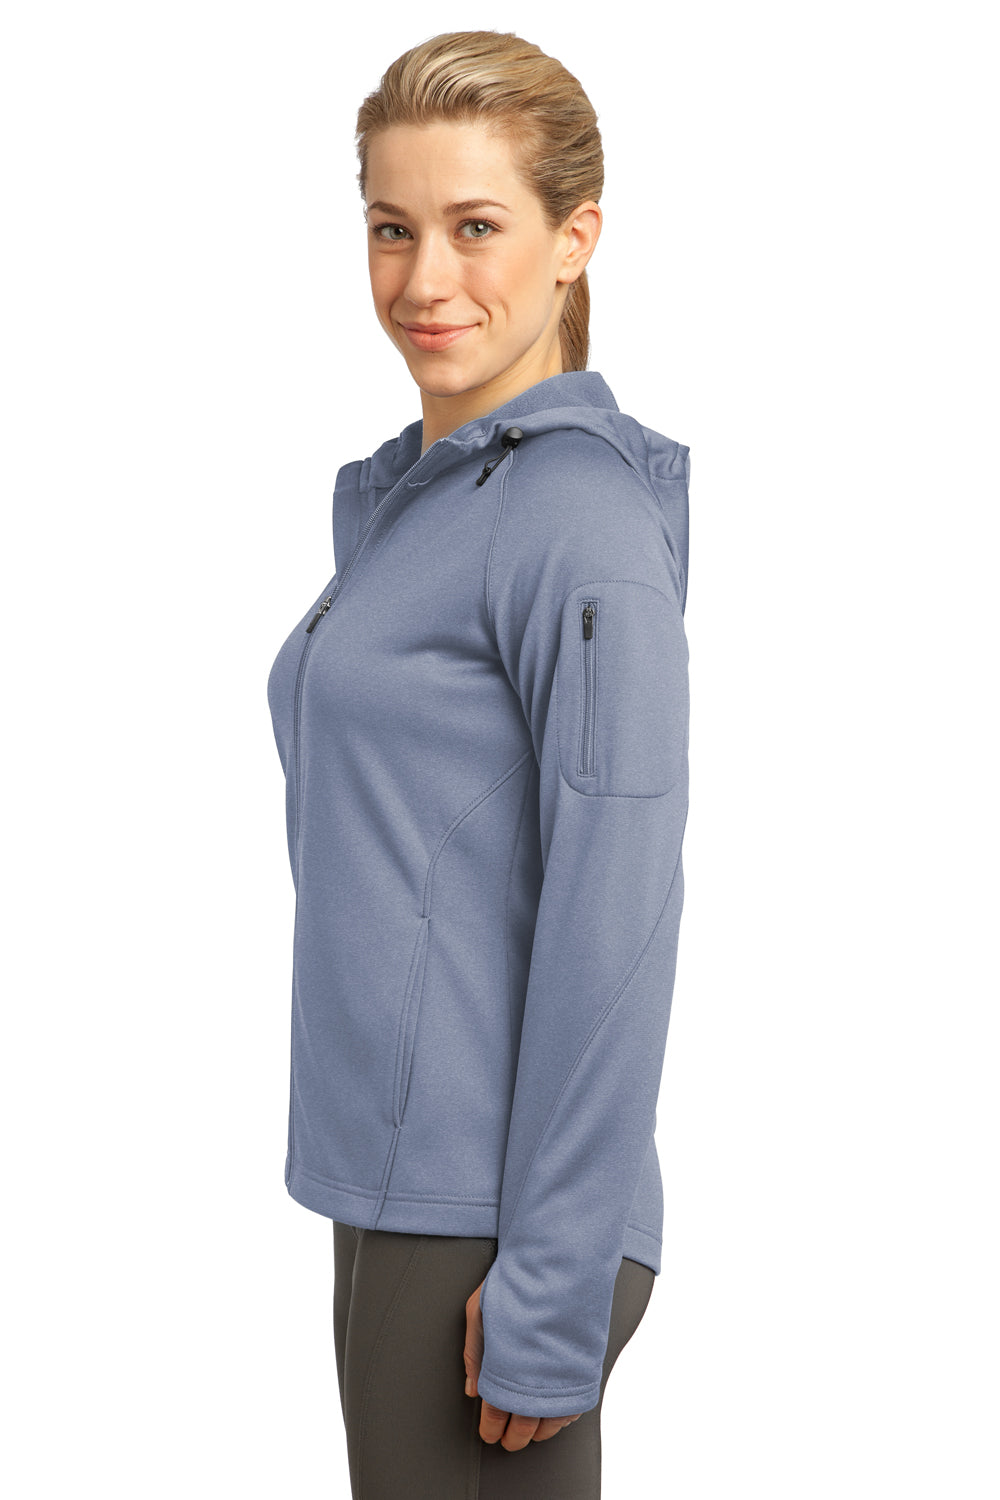 Sport-Tek L248 Womens Tech Moisture Wicking Fleece Full Zip Hooded Sweatshirt Hoodie Heather Grey Side